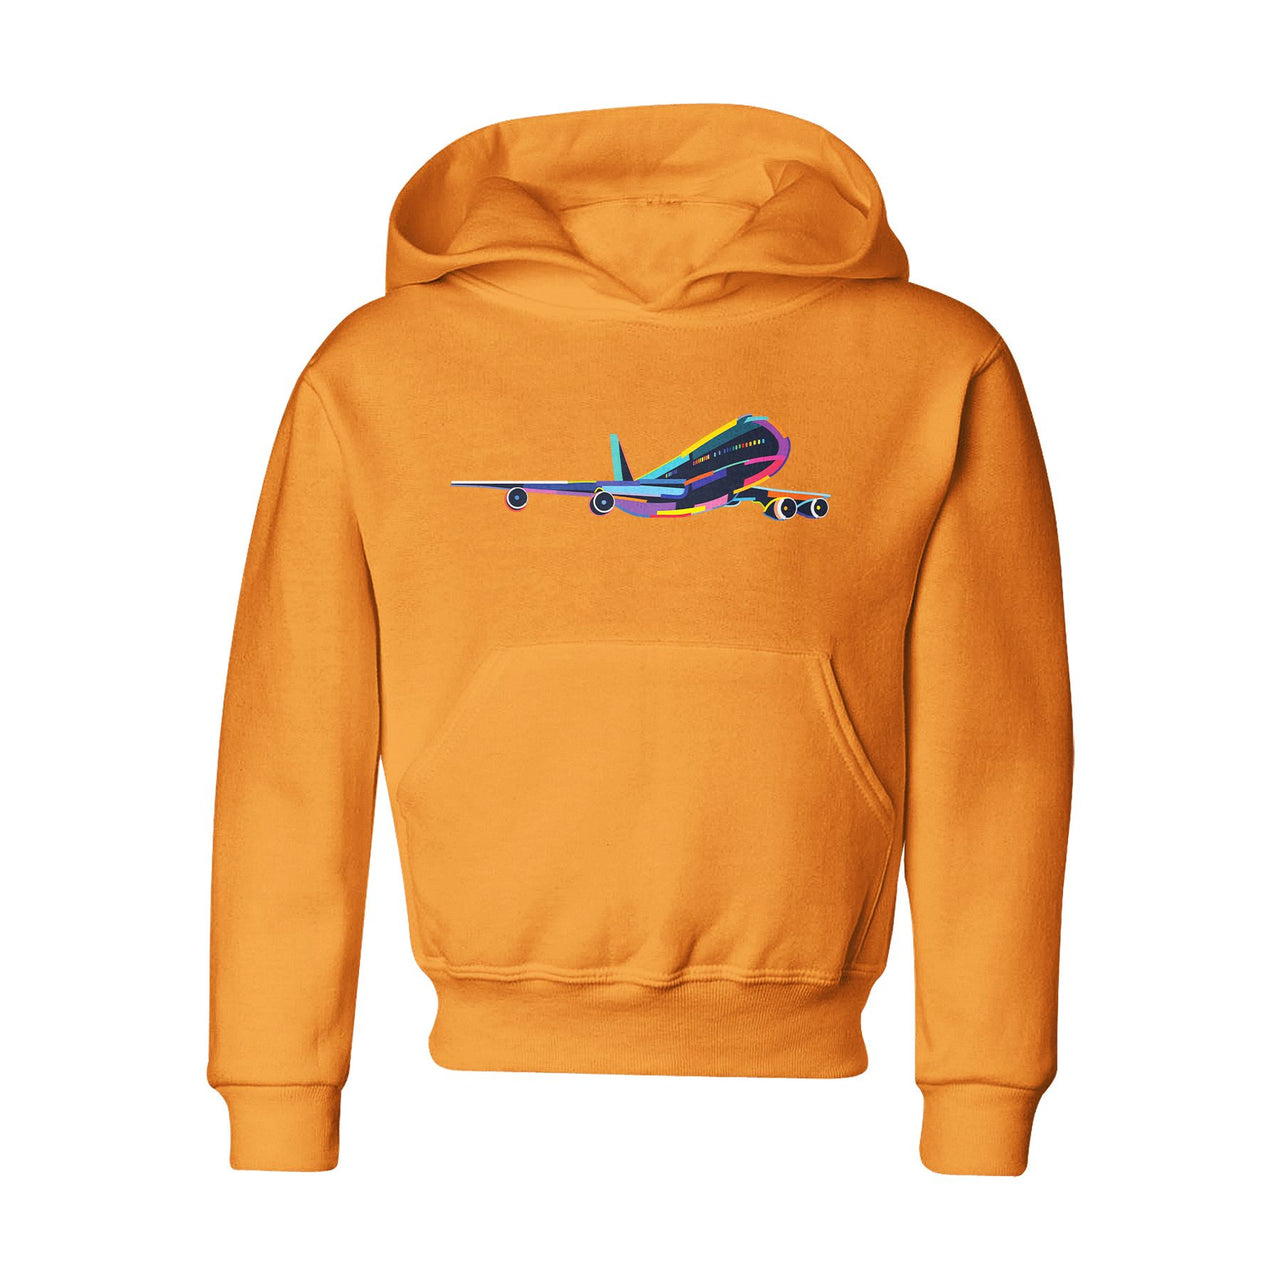 Multicolor Airplane Designed "CHILDREN" Hoodies